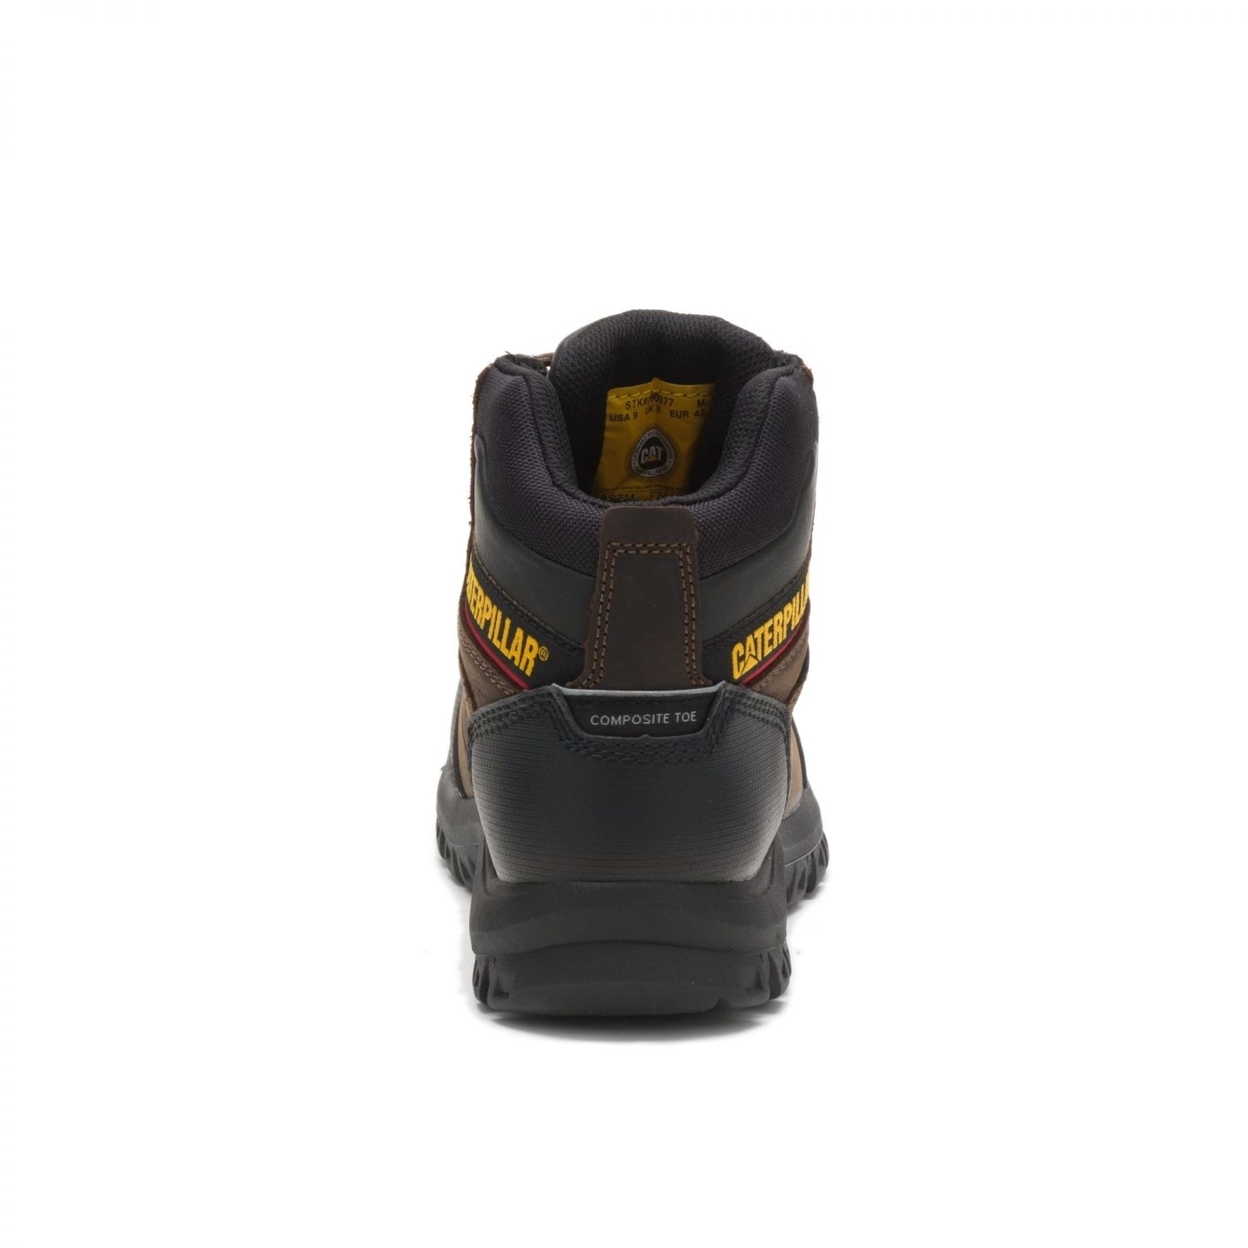 Cat Footwear Men's Resorption Composite Toe Waterproof Industrial Boot BLACK - BLACK, 10-M